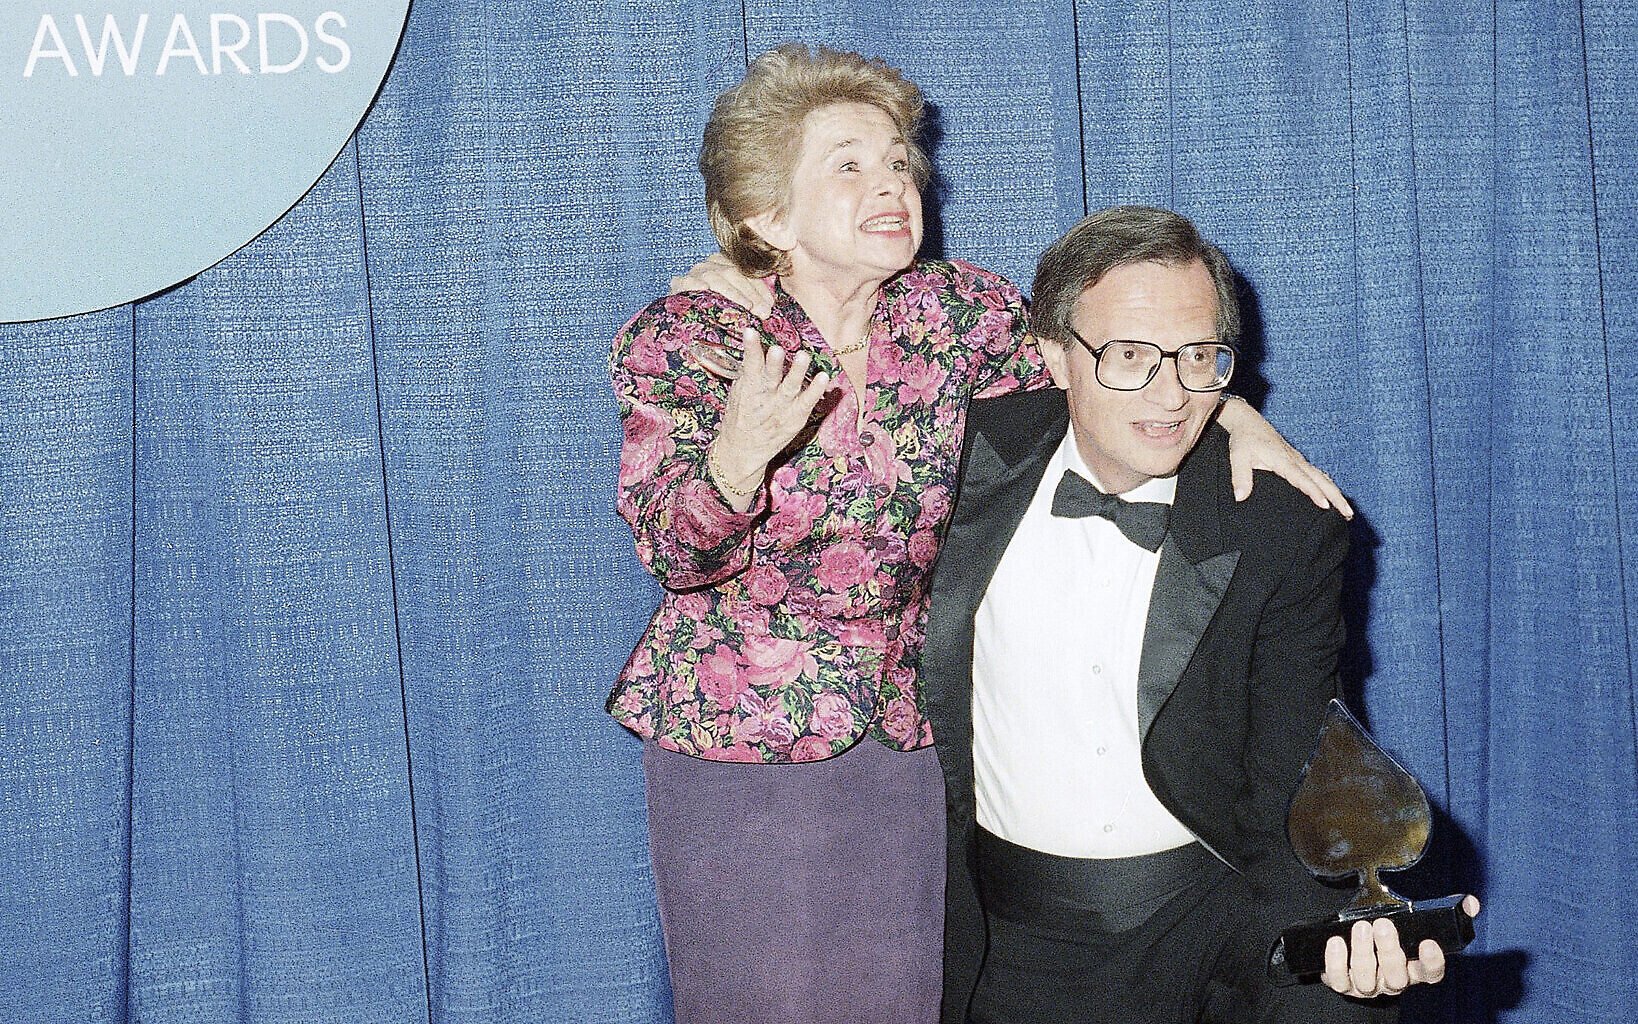 Larry King, legendary Jewish-American talk show host, dies at 87 - The  Jerusalem Post